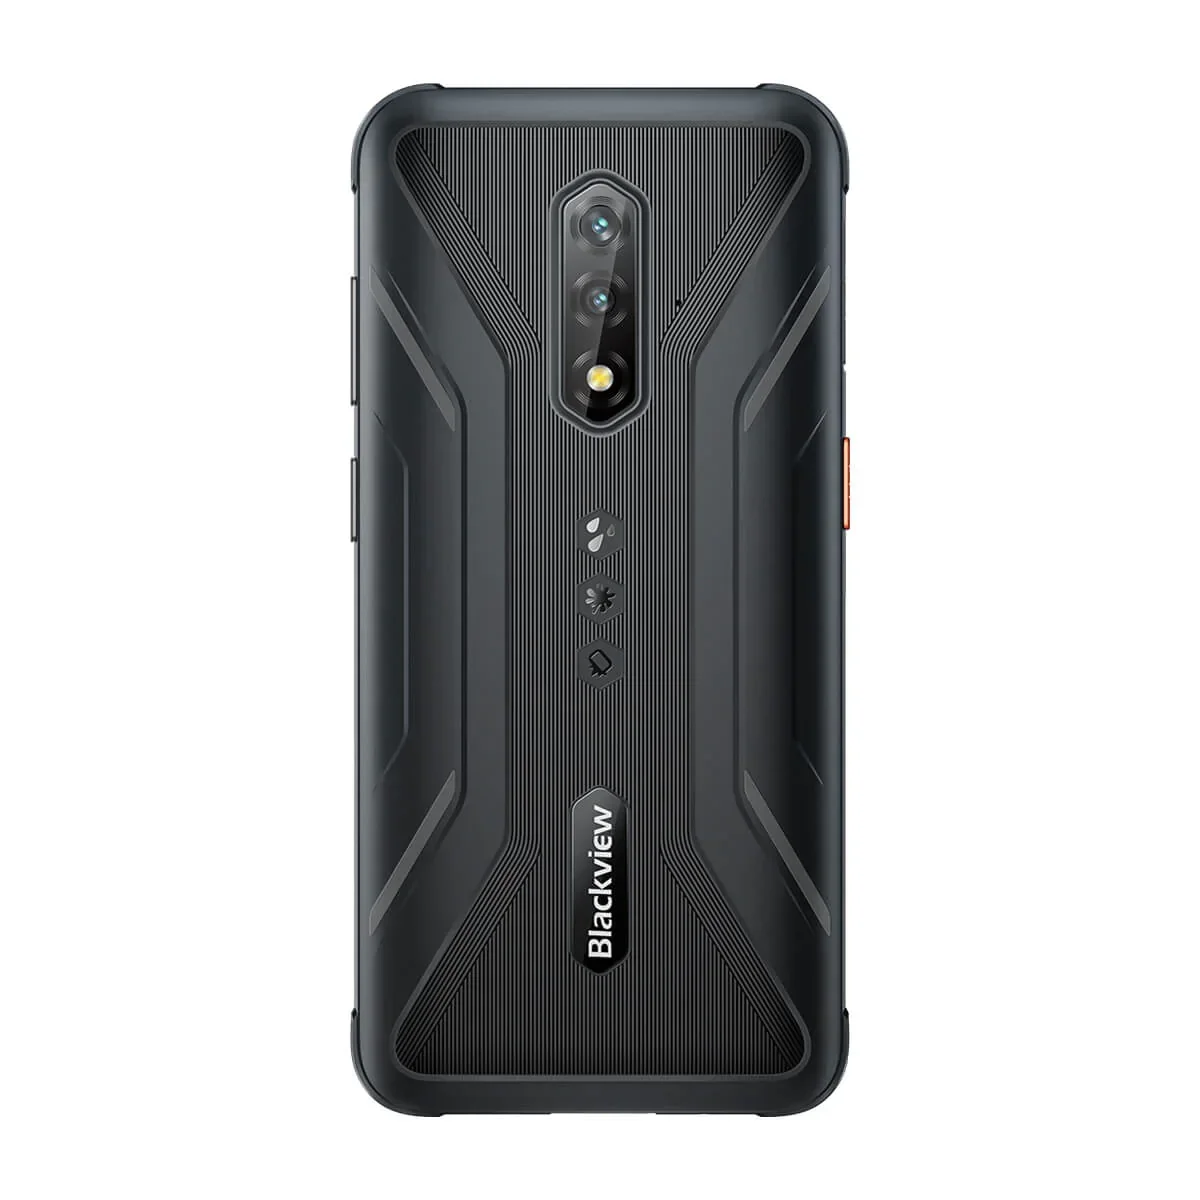 Mobilusis telefonas Blackview BV5200 Pro, juodas, 4GB/64GB - 4